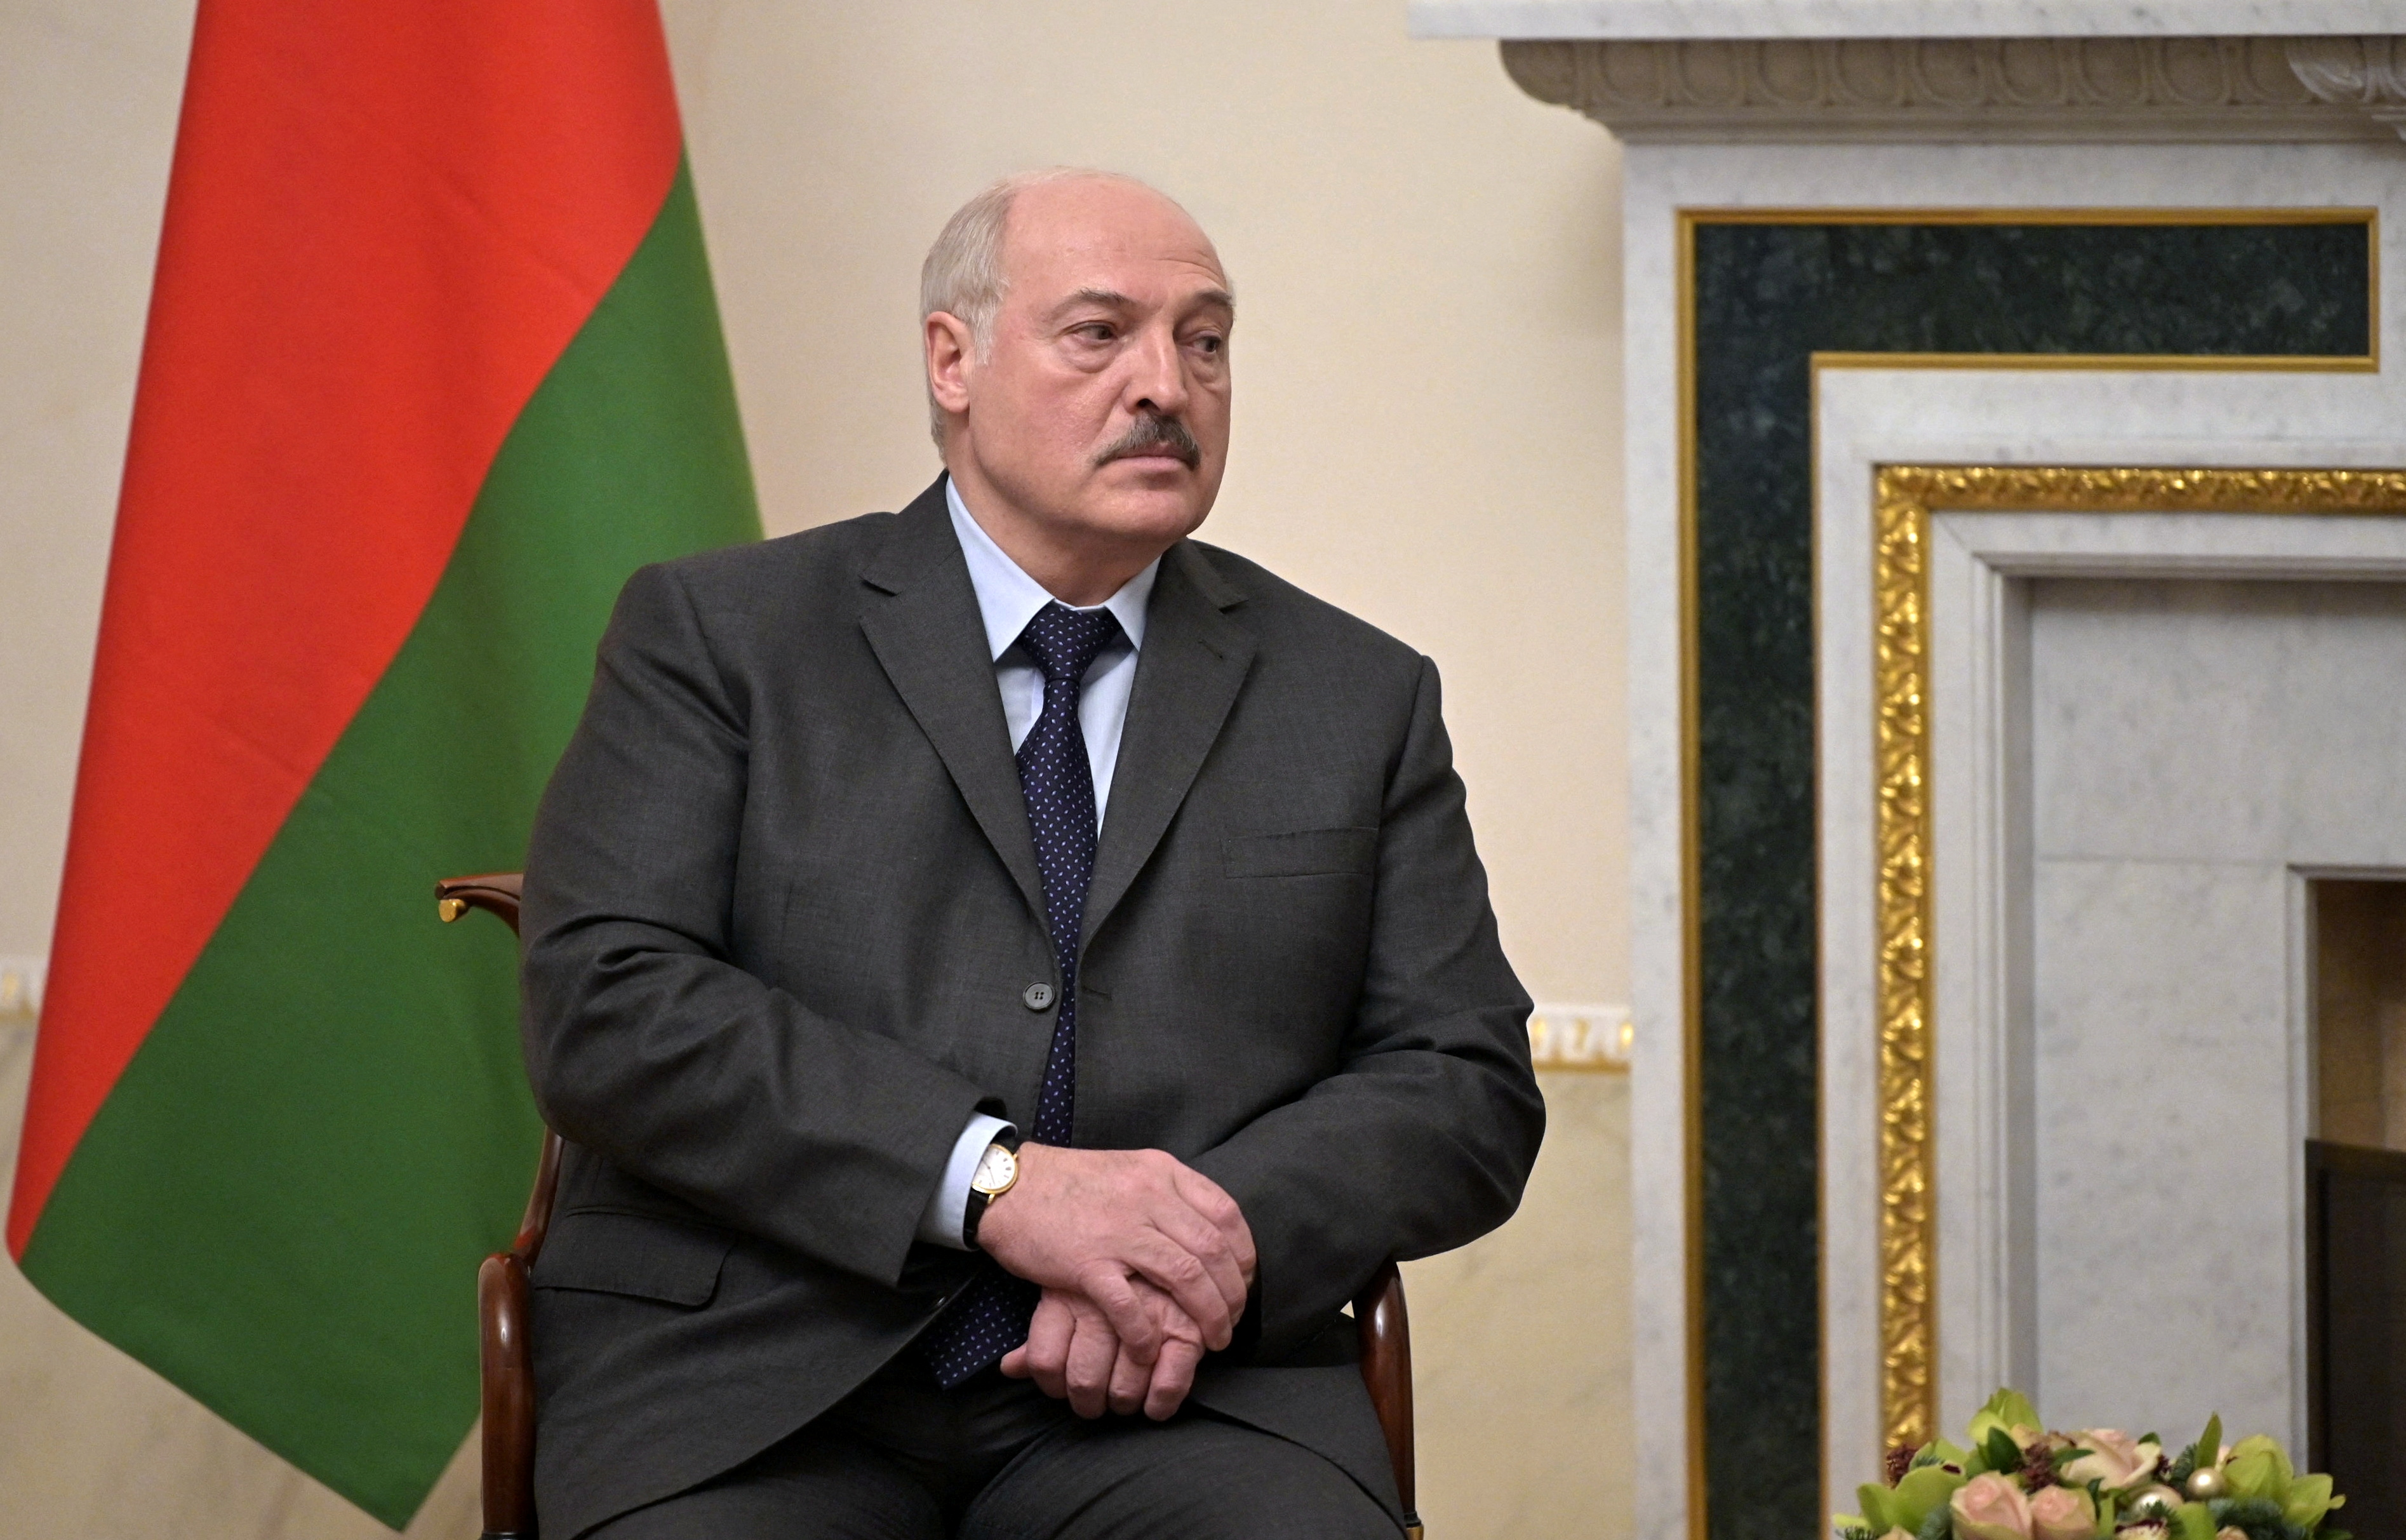 La oposición bielorrusia denuncia que el dictador Alexander Lukashenko busca perpetuarse en el poder (REUTERS)